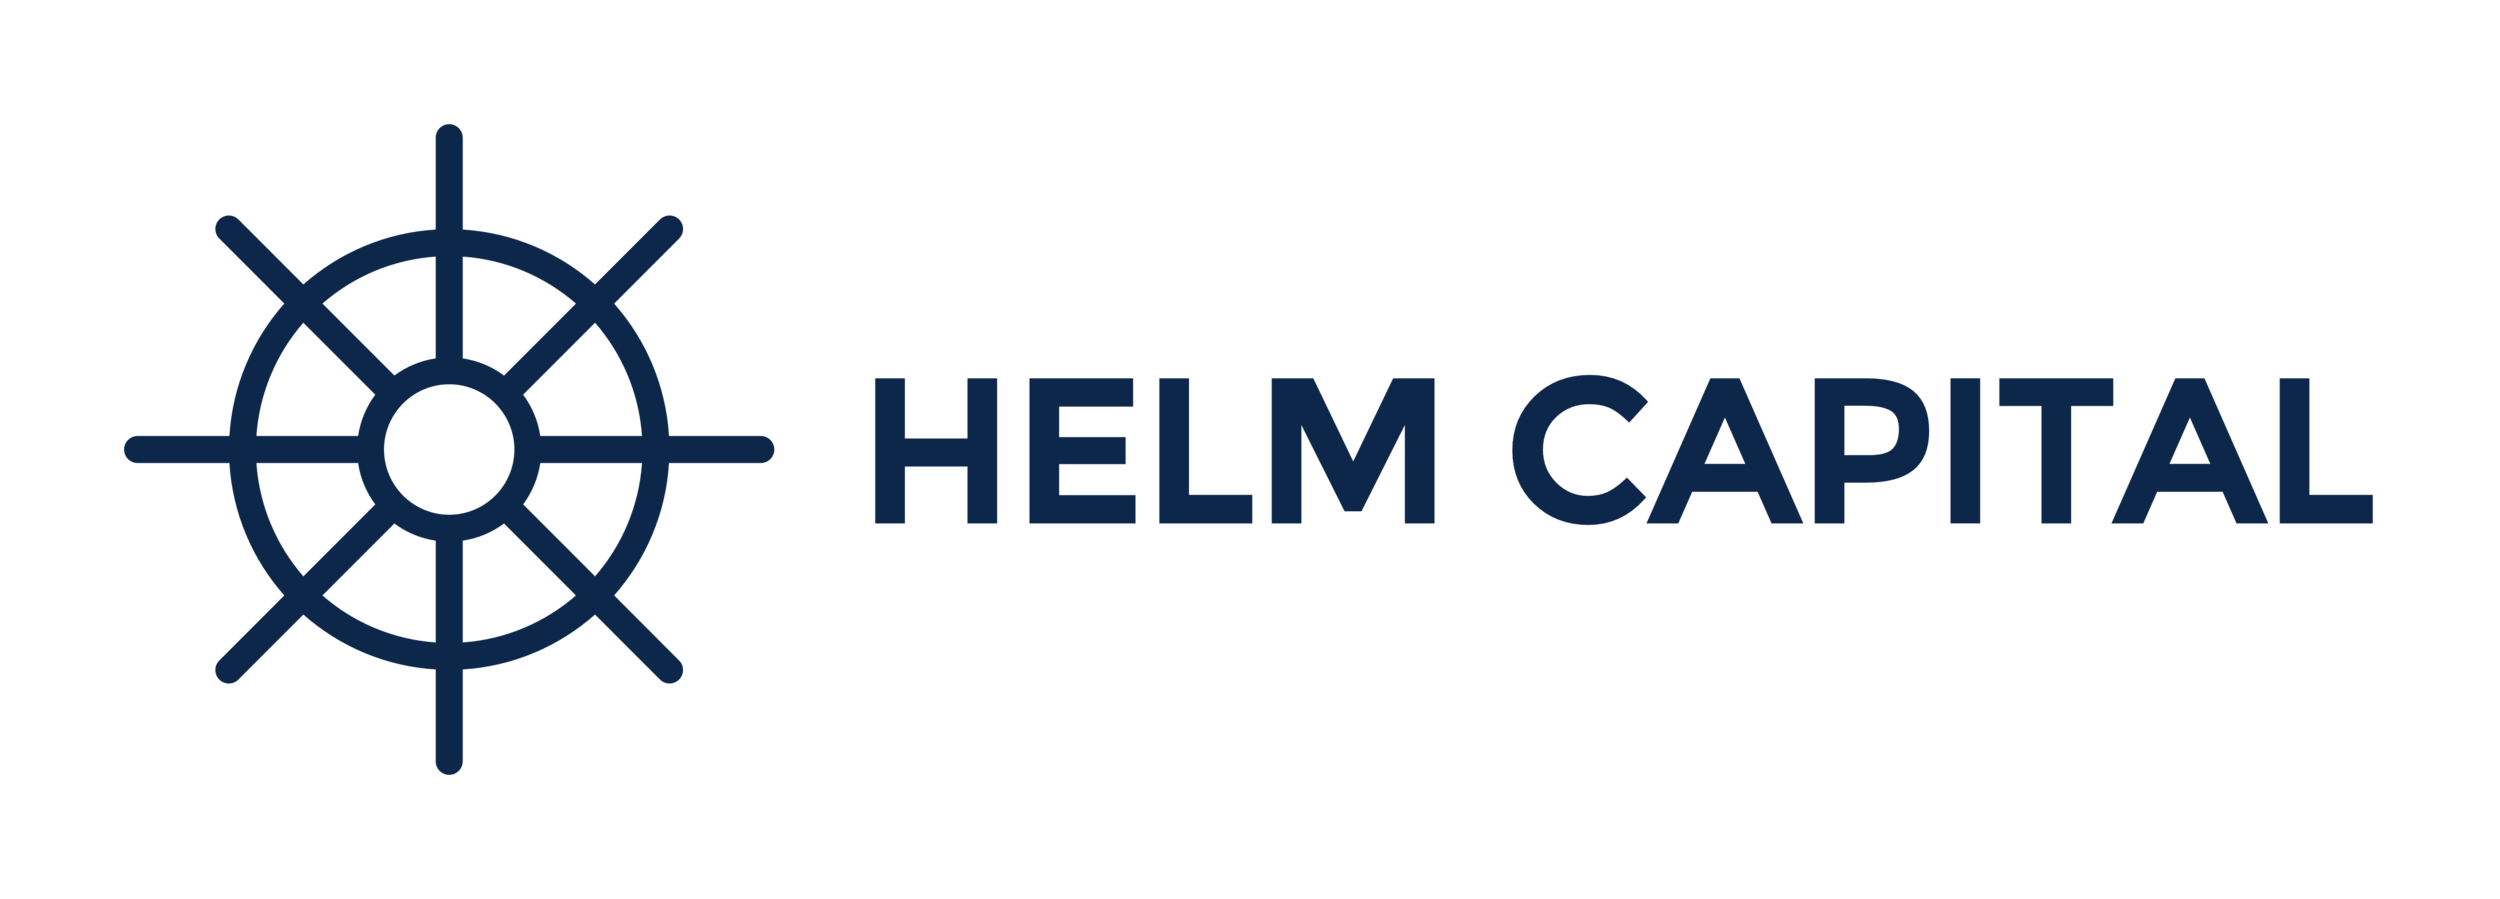 HELM CAPITAL, LLC